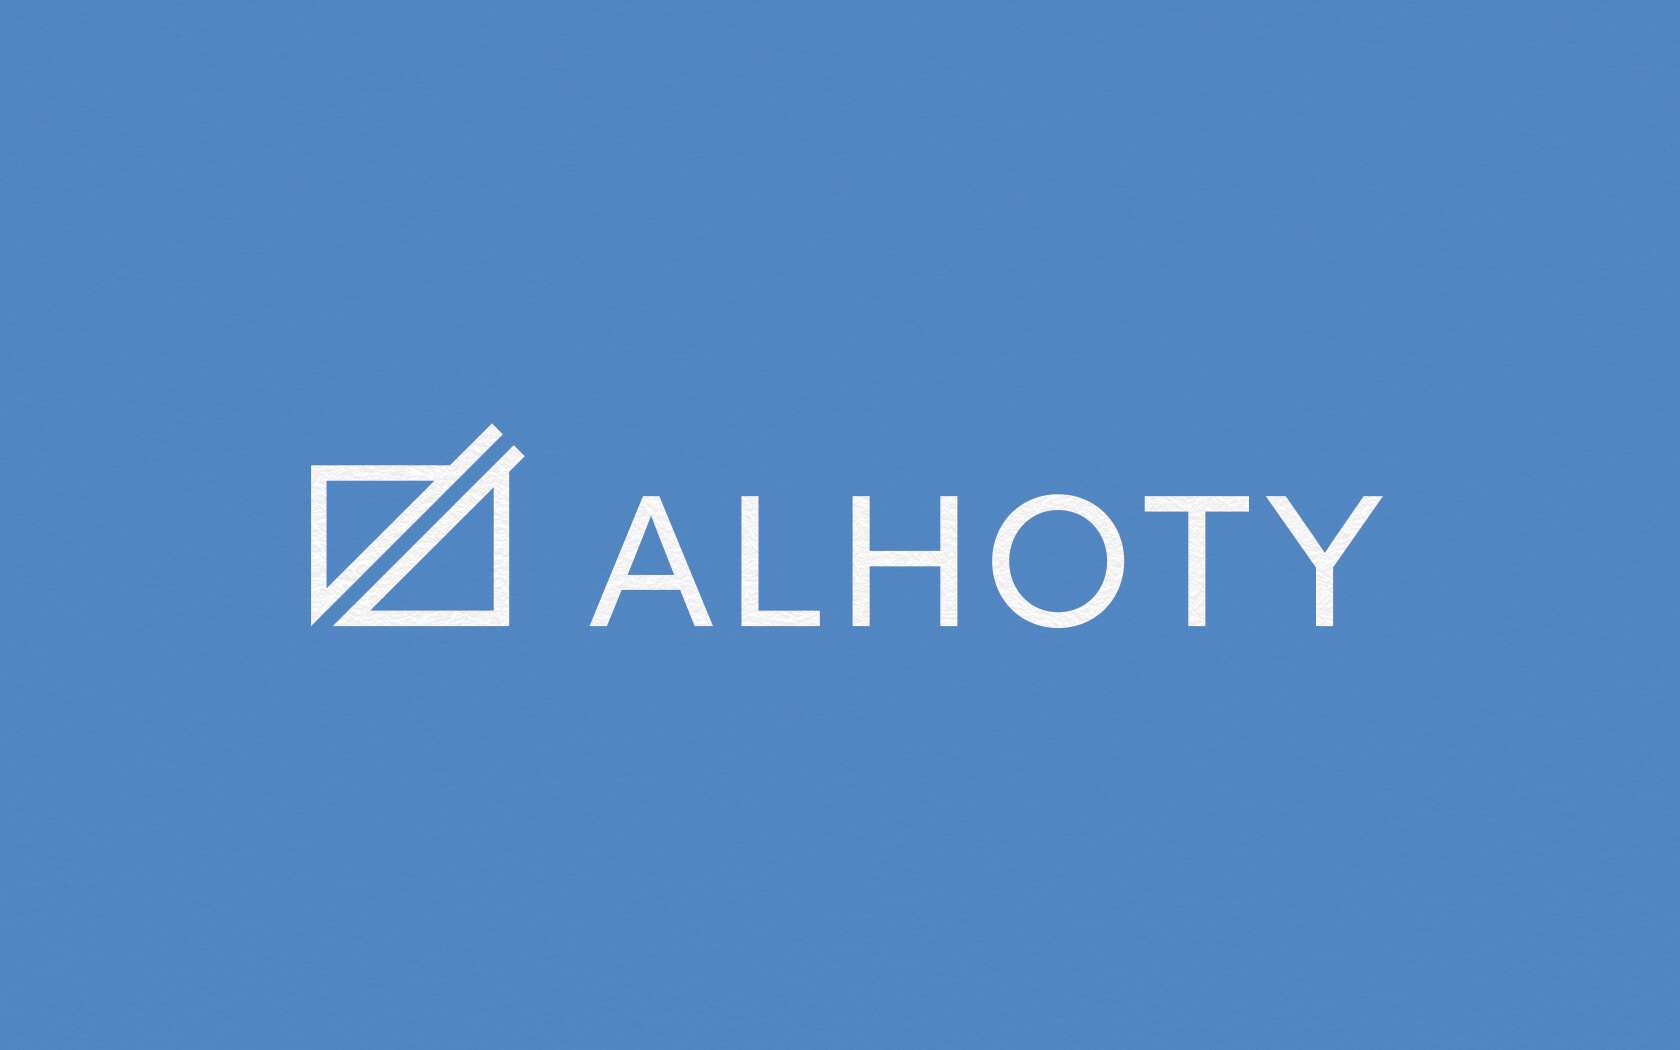 Alhoty. Brand logo in white